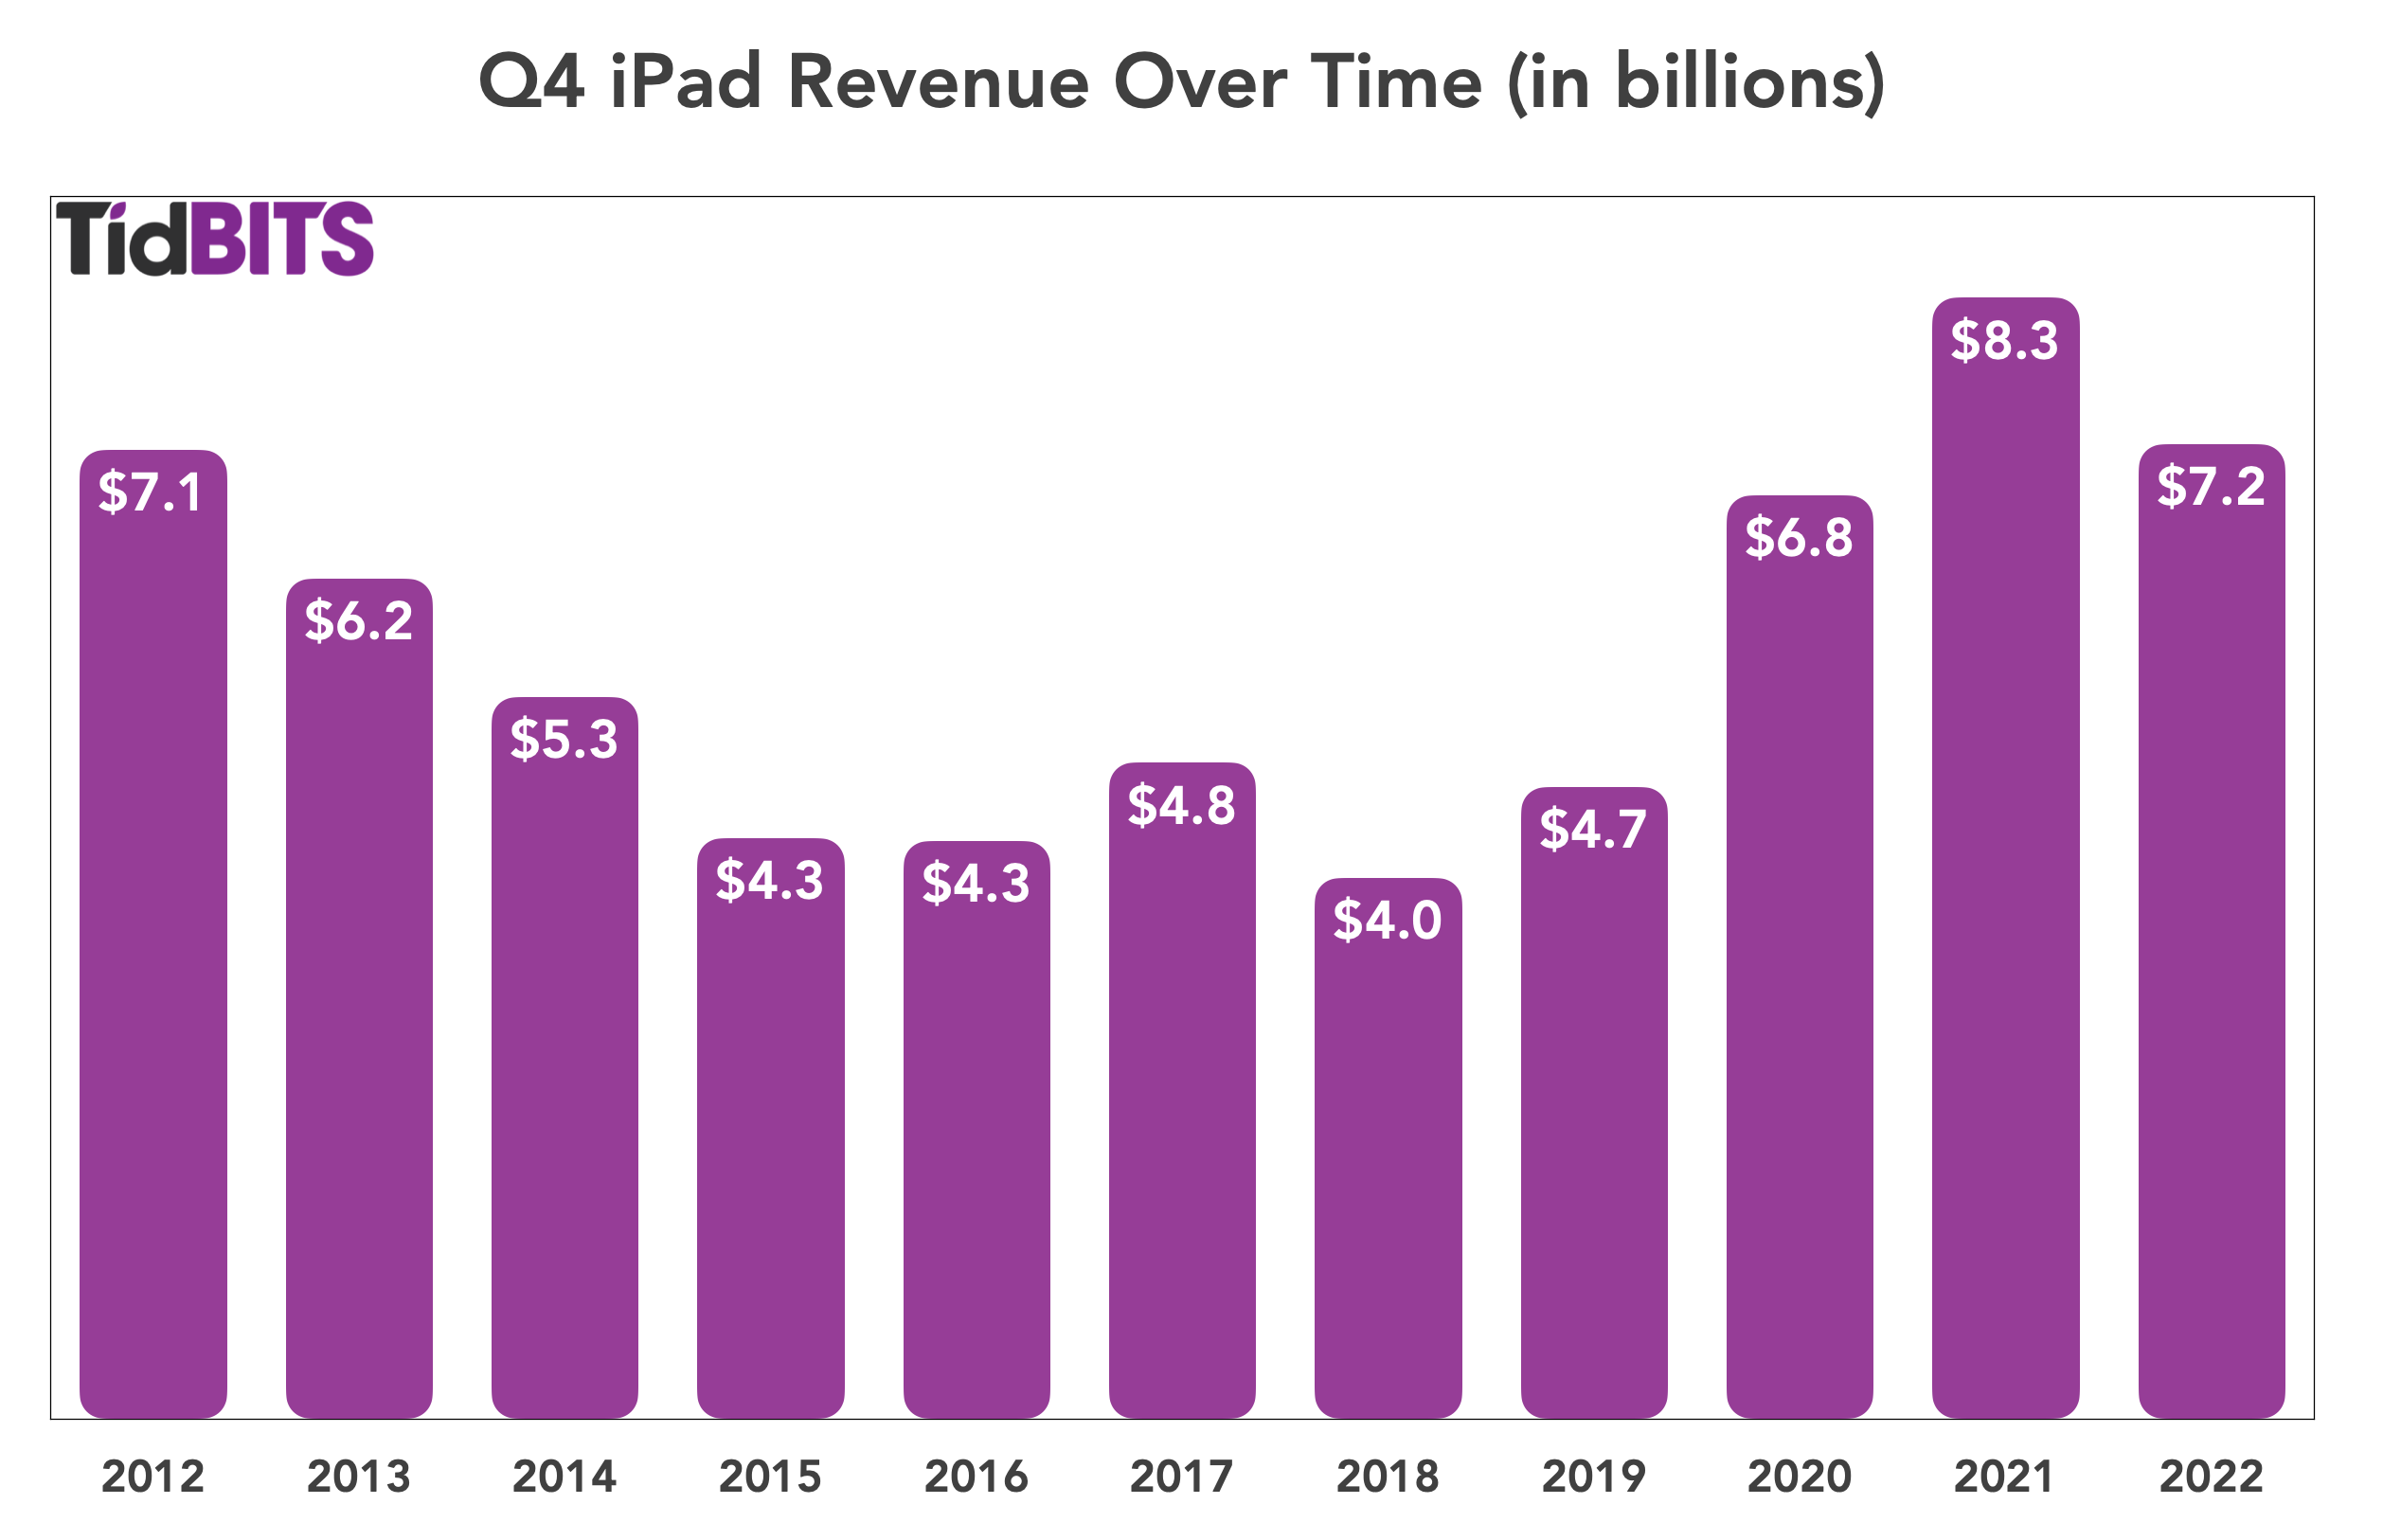 Q4 iPad Revenue